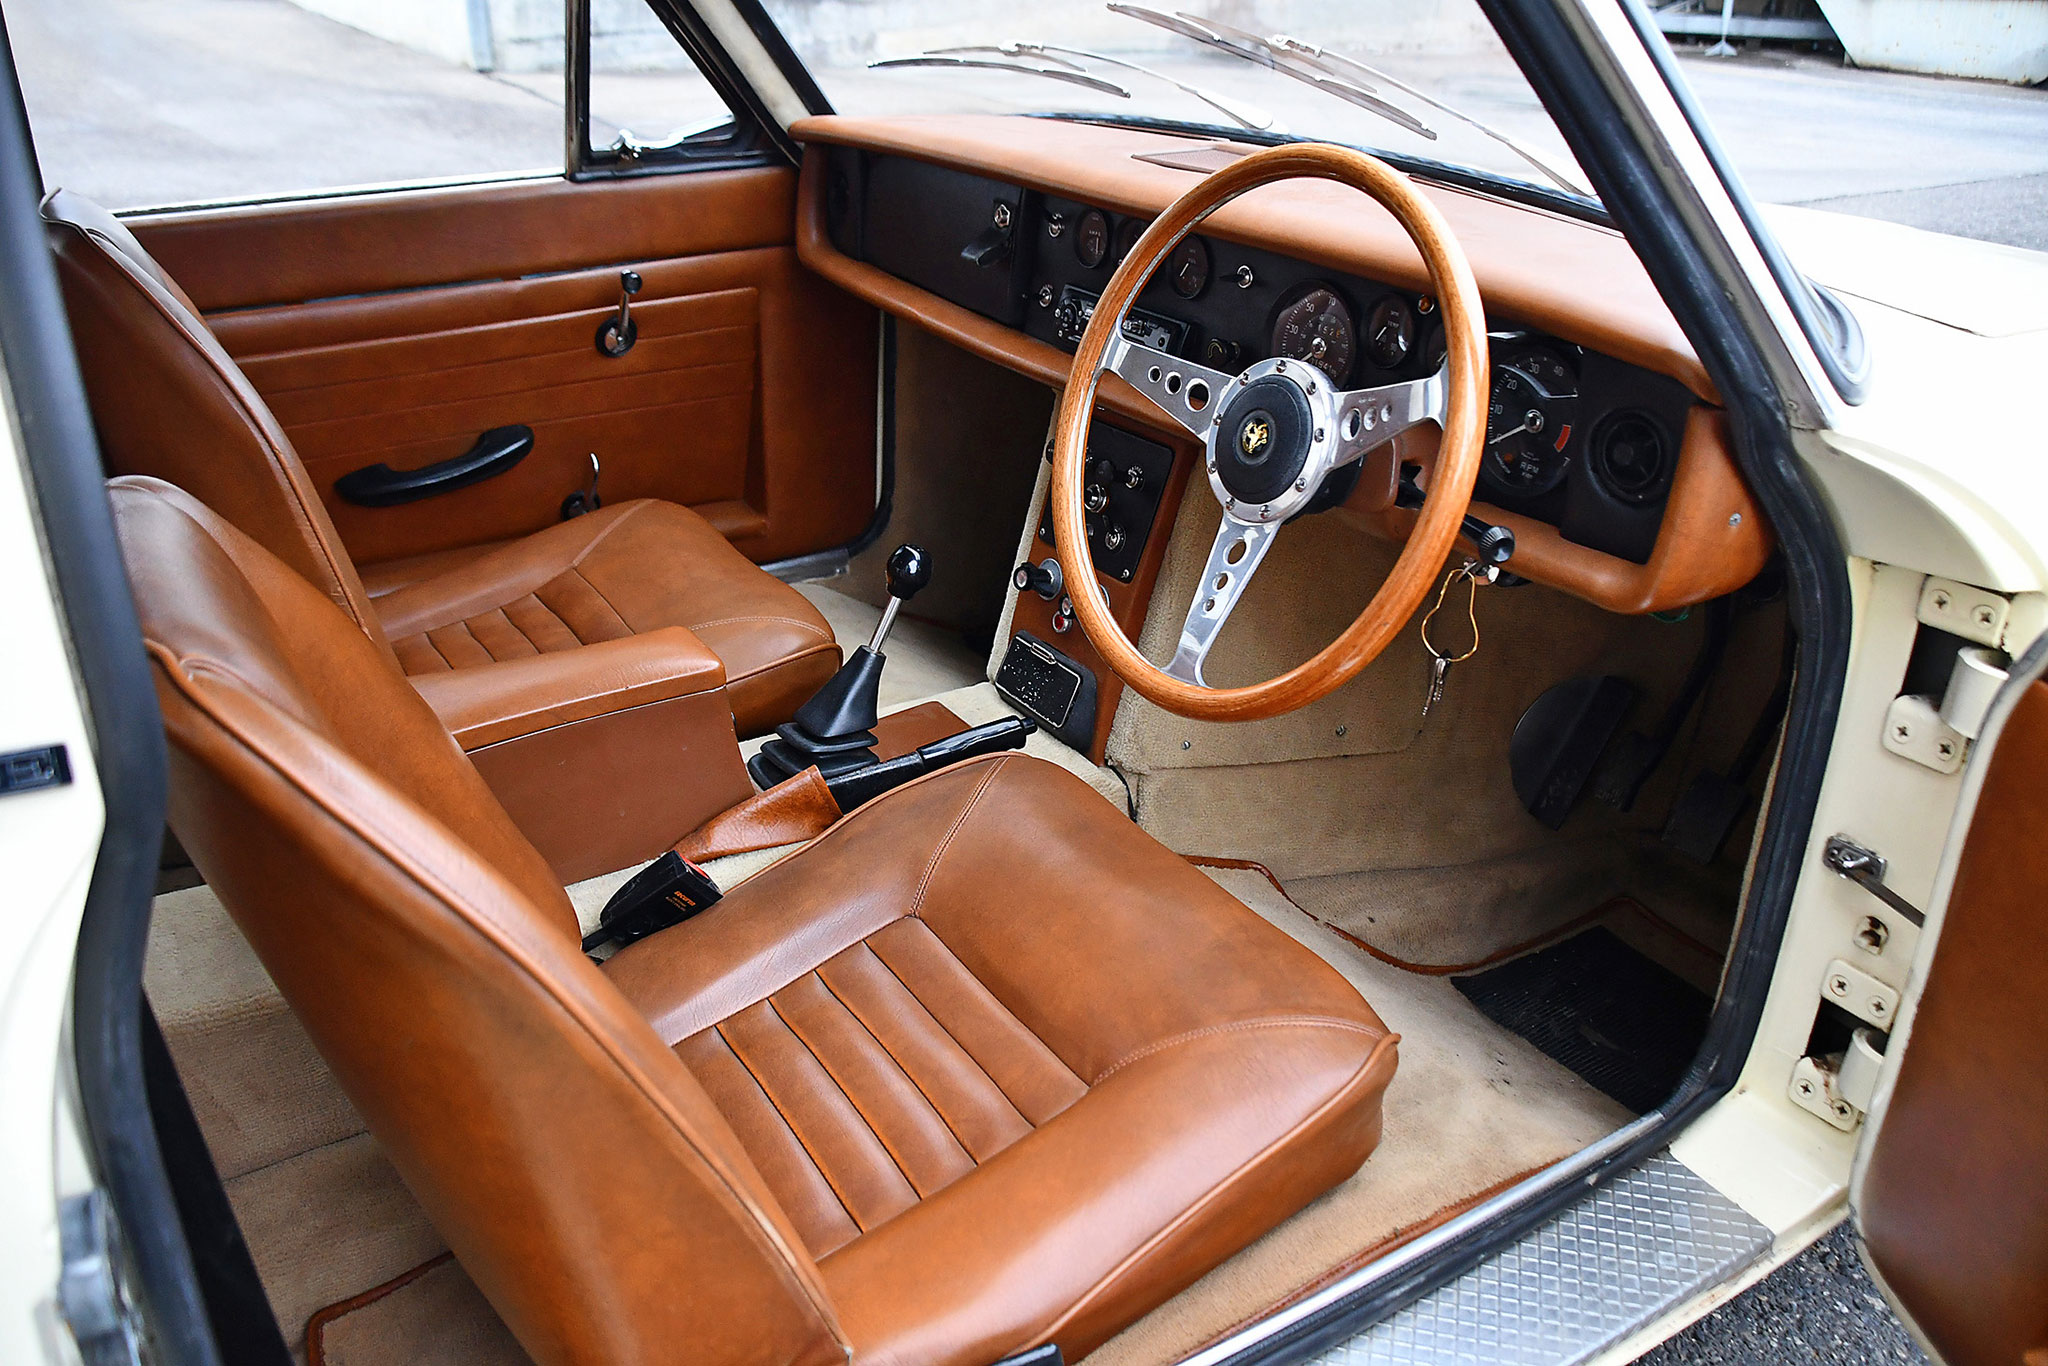 1971 Reliant Scimitar GTE SE5 – intérieur en cuir récent pour cette 4 places atypique.